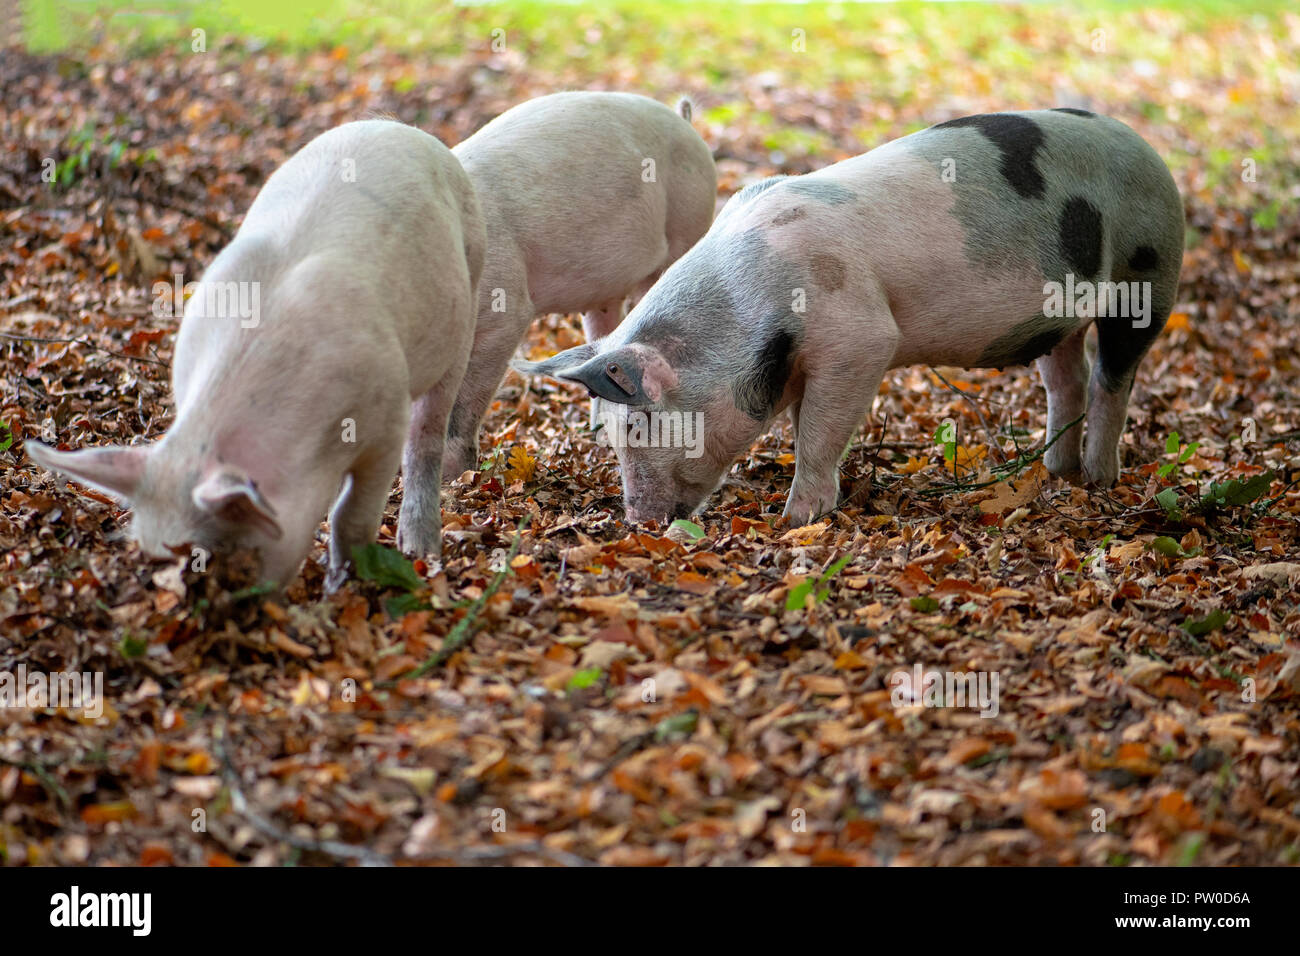 Schweine in den New Forest National Park freigegeben Eicheln, die den New Forest Ponys giftig sind zu essen - Pannage Stockfoto